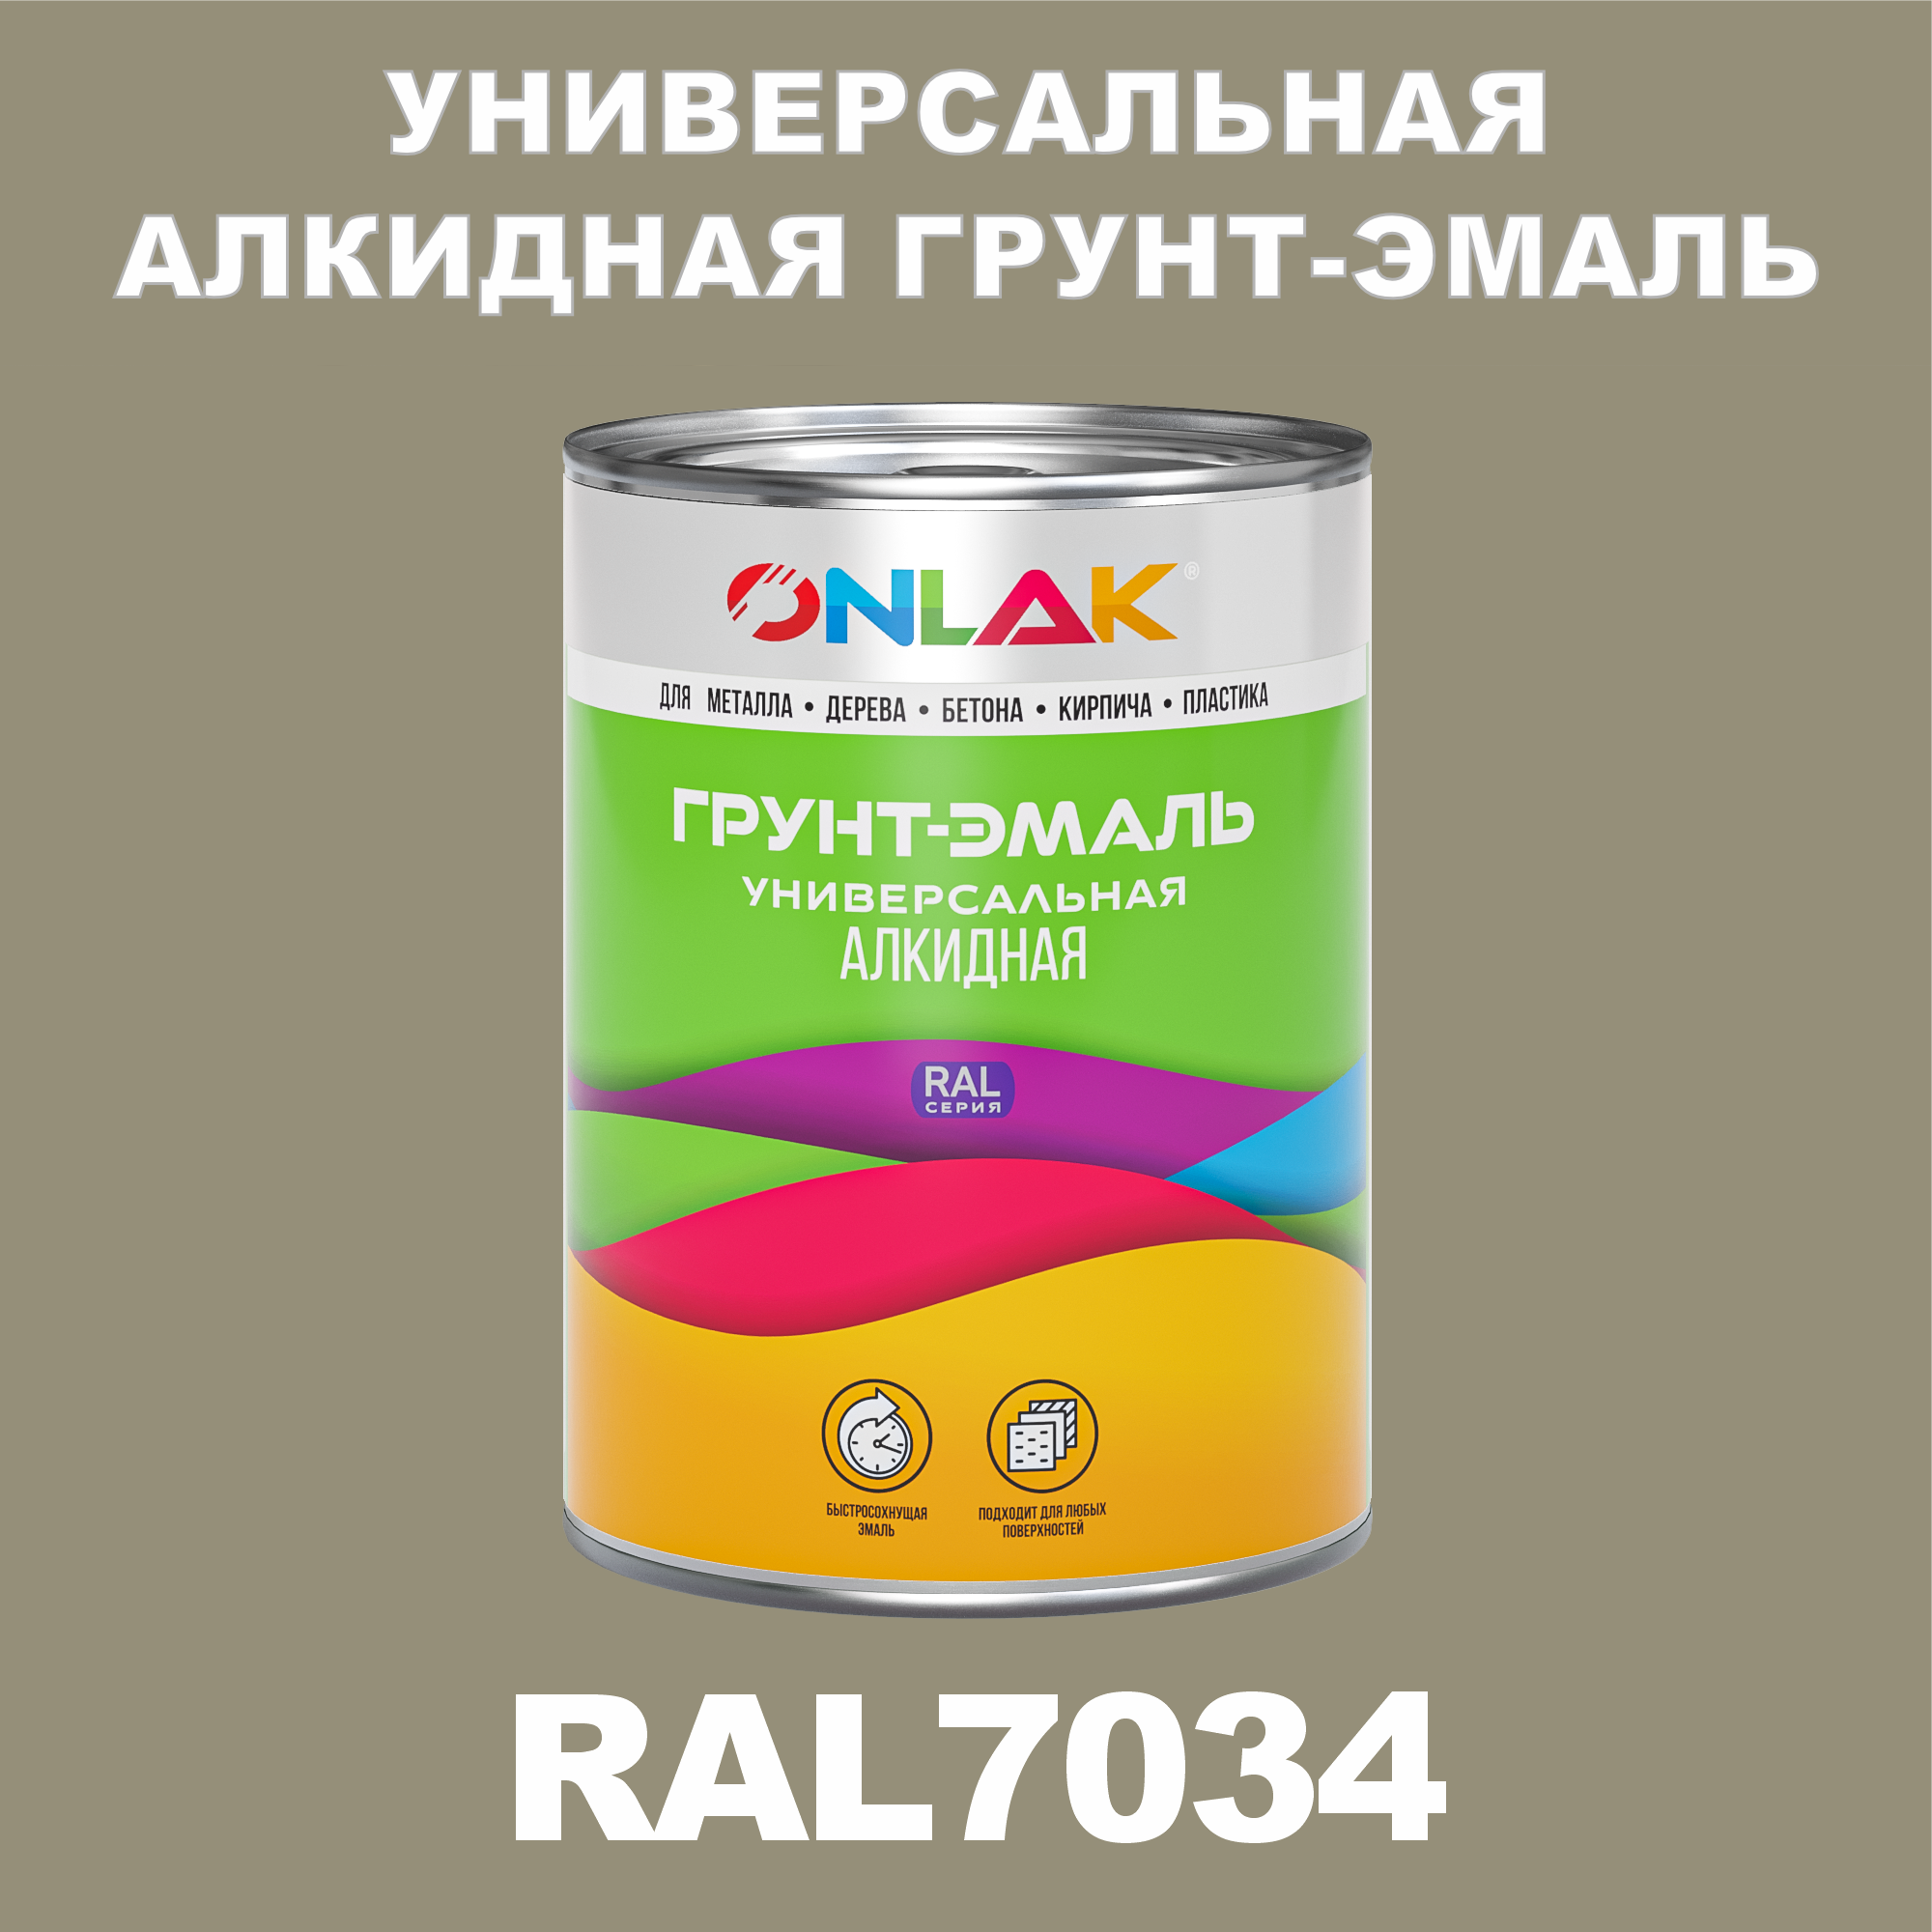 Грунт-эмаль ONLAK 1К RAL7034 антикоррозионная алкидная по металлу по ржавчине 1 кг грунт эмаль престиж по ржавчине алкидная зеленая 1 9 кг